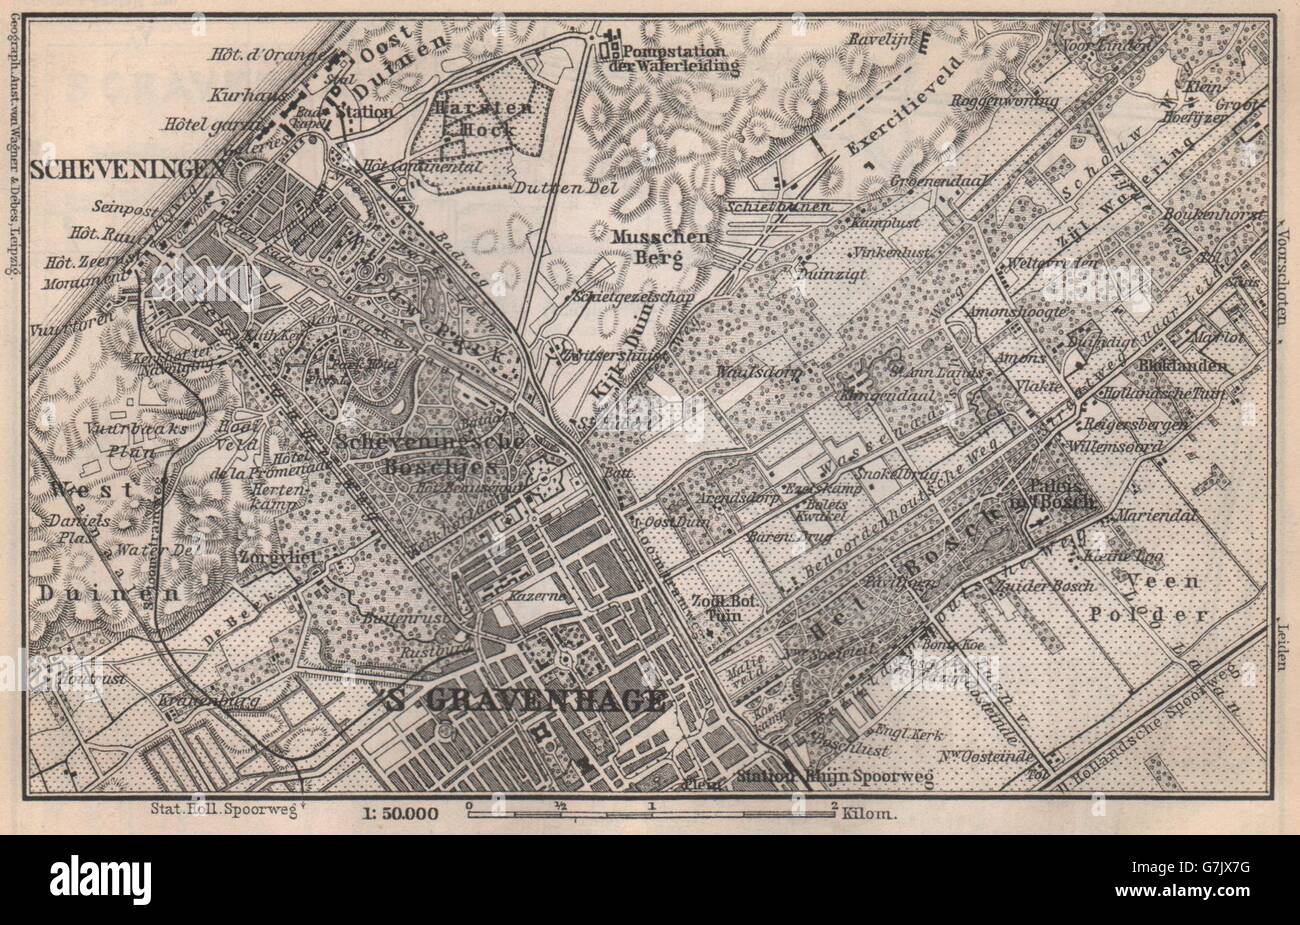 Netherlands 1910 map SCHEVENINGEN & THE HAGUE DEN HAAG 'S-GRAVENHAGE environs 